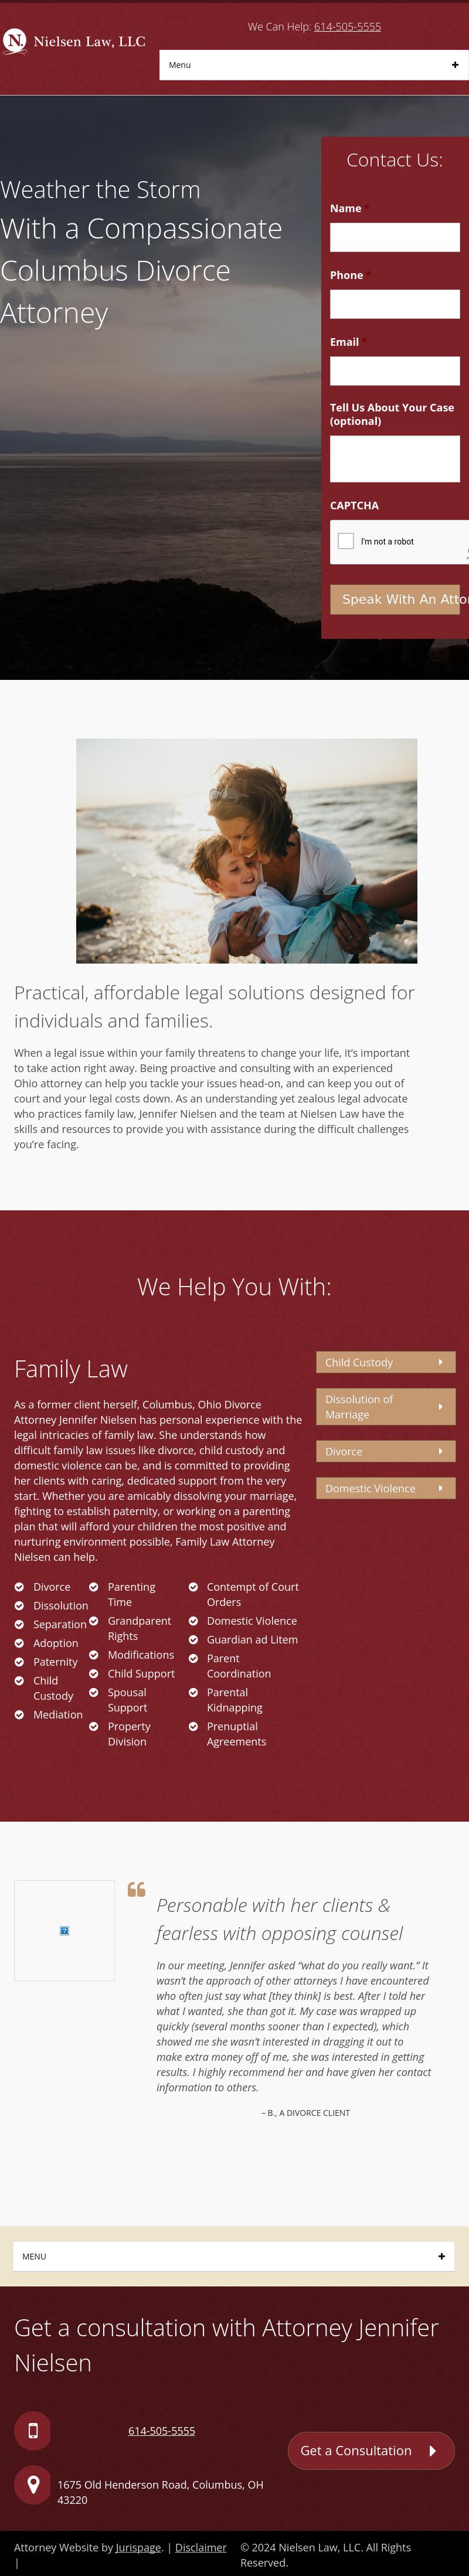 Nielsen Law, LLC - Hilliard OH Lawyers